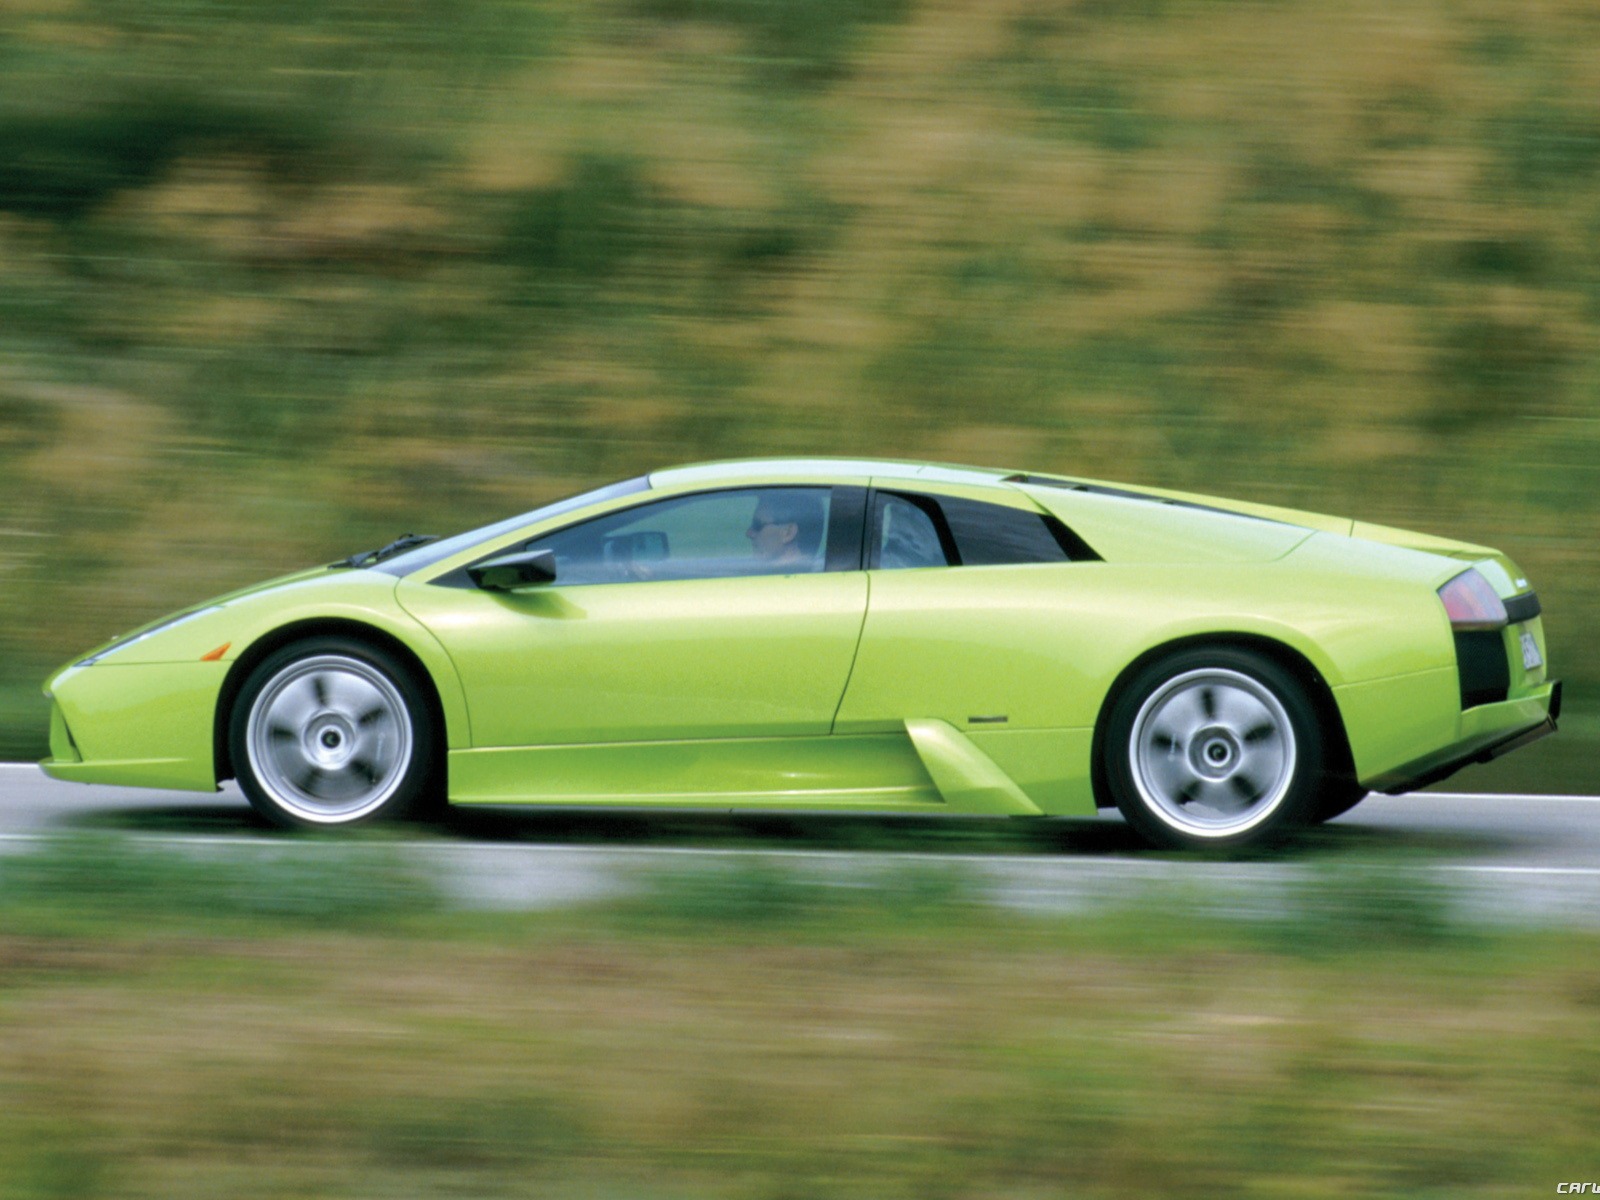 Lamborghini Murcielago - 2001 蘭博基尼(二) #43 - 1600x1200